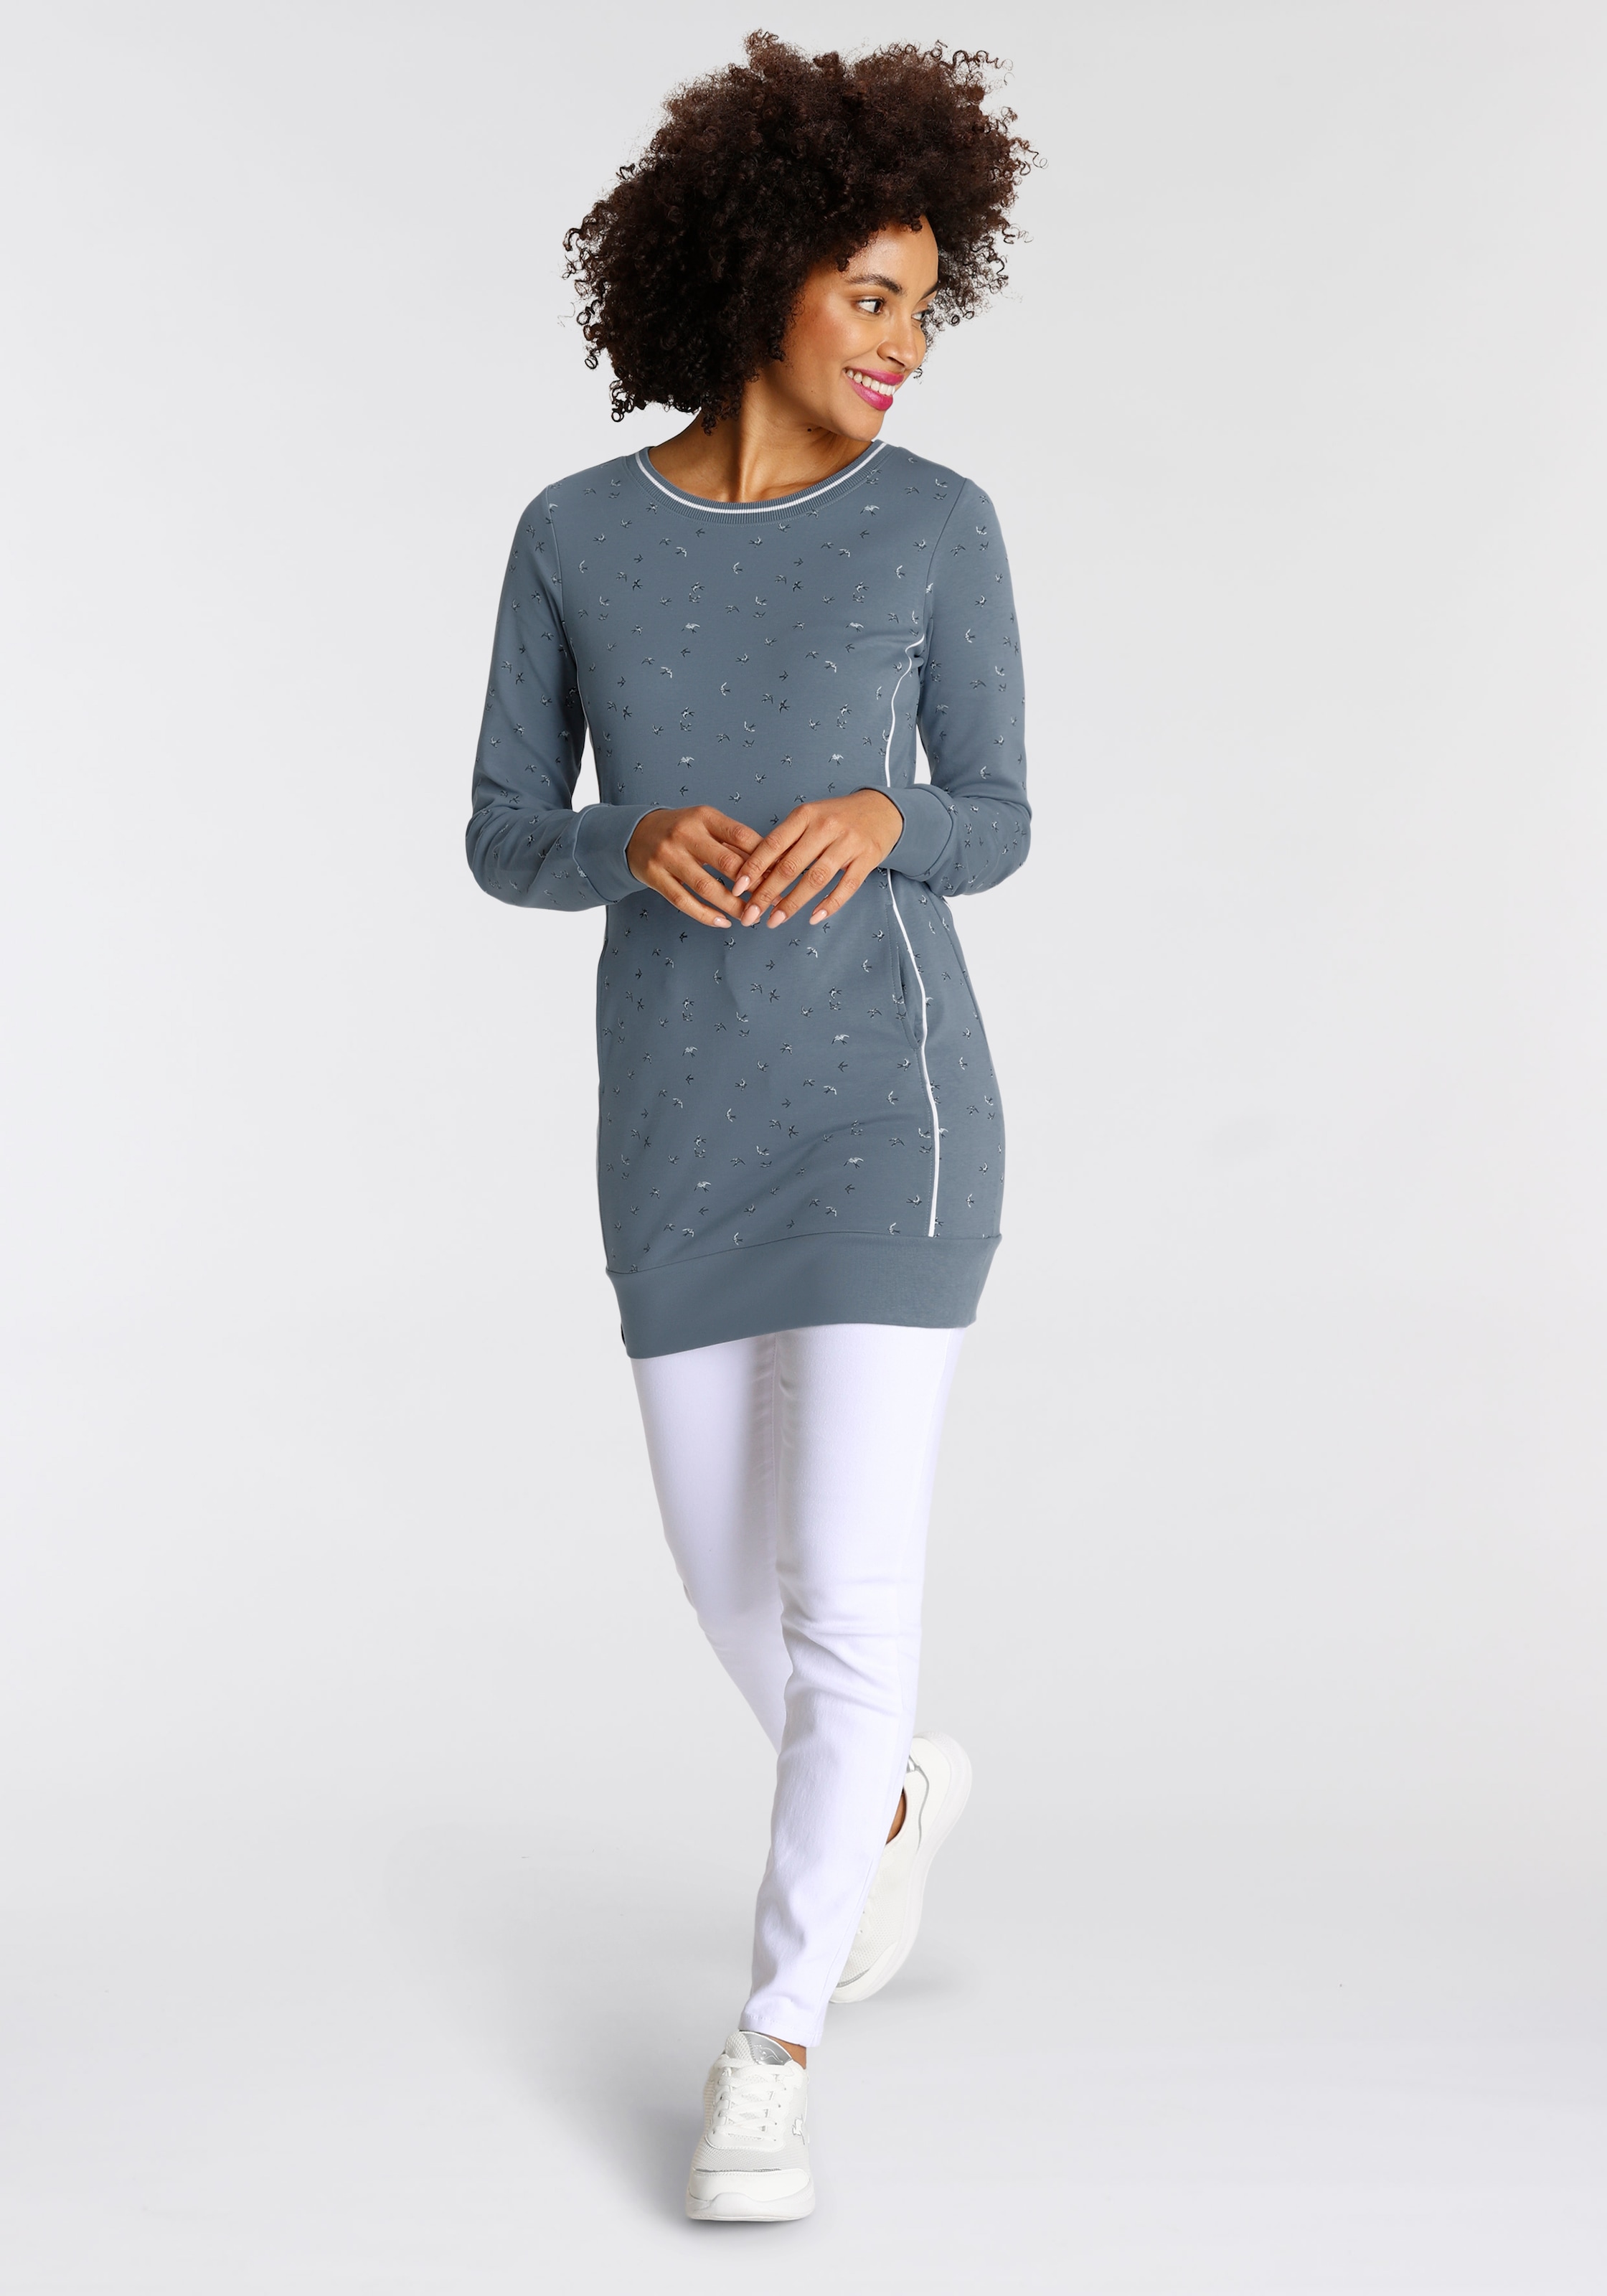 KangaROOS Sweater kaufen Shop Online OTTO im